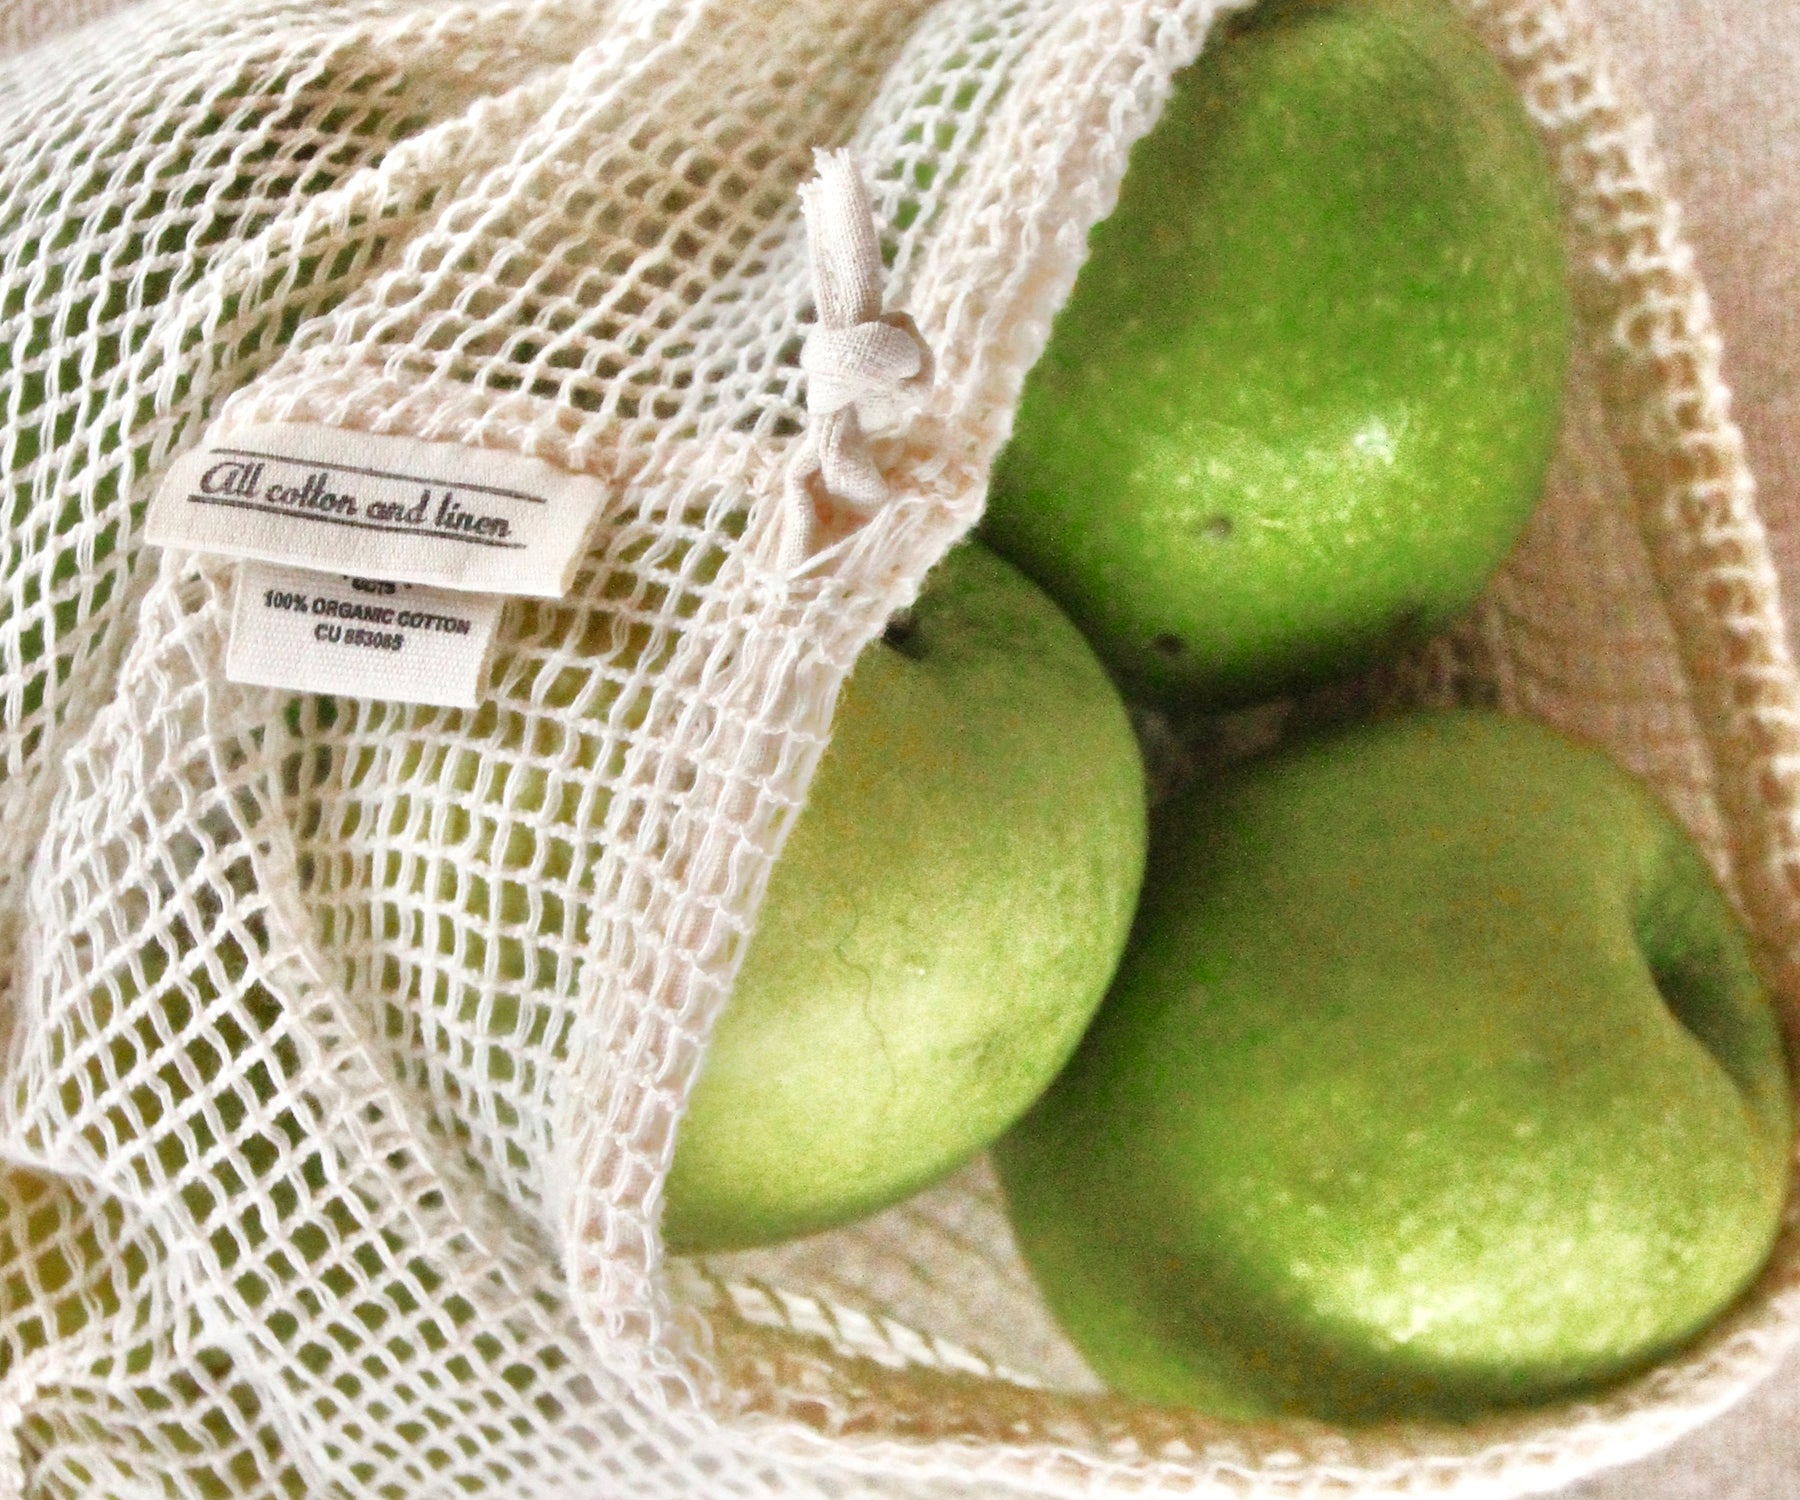 Green apples visible through a reusable mesh produce bag